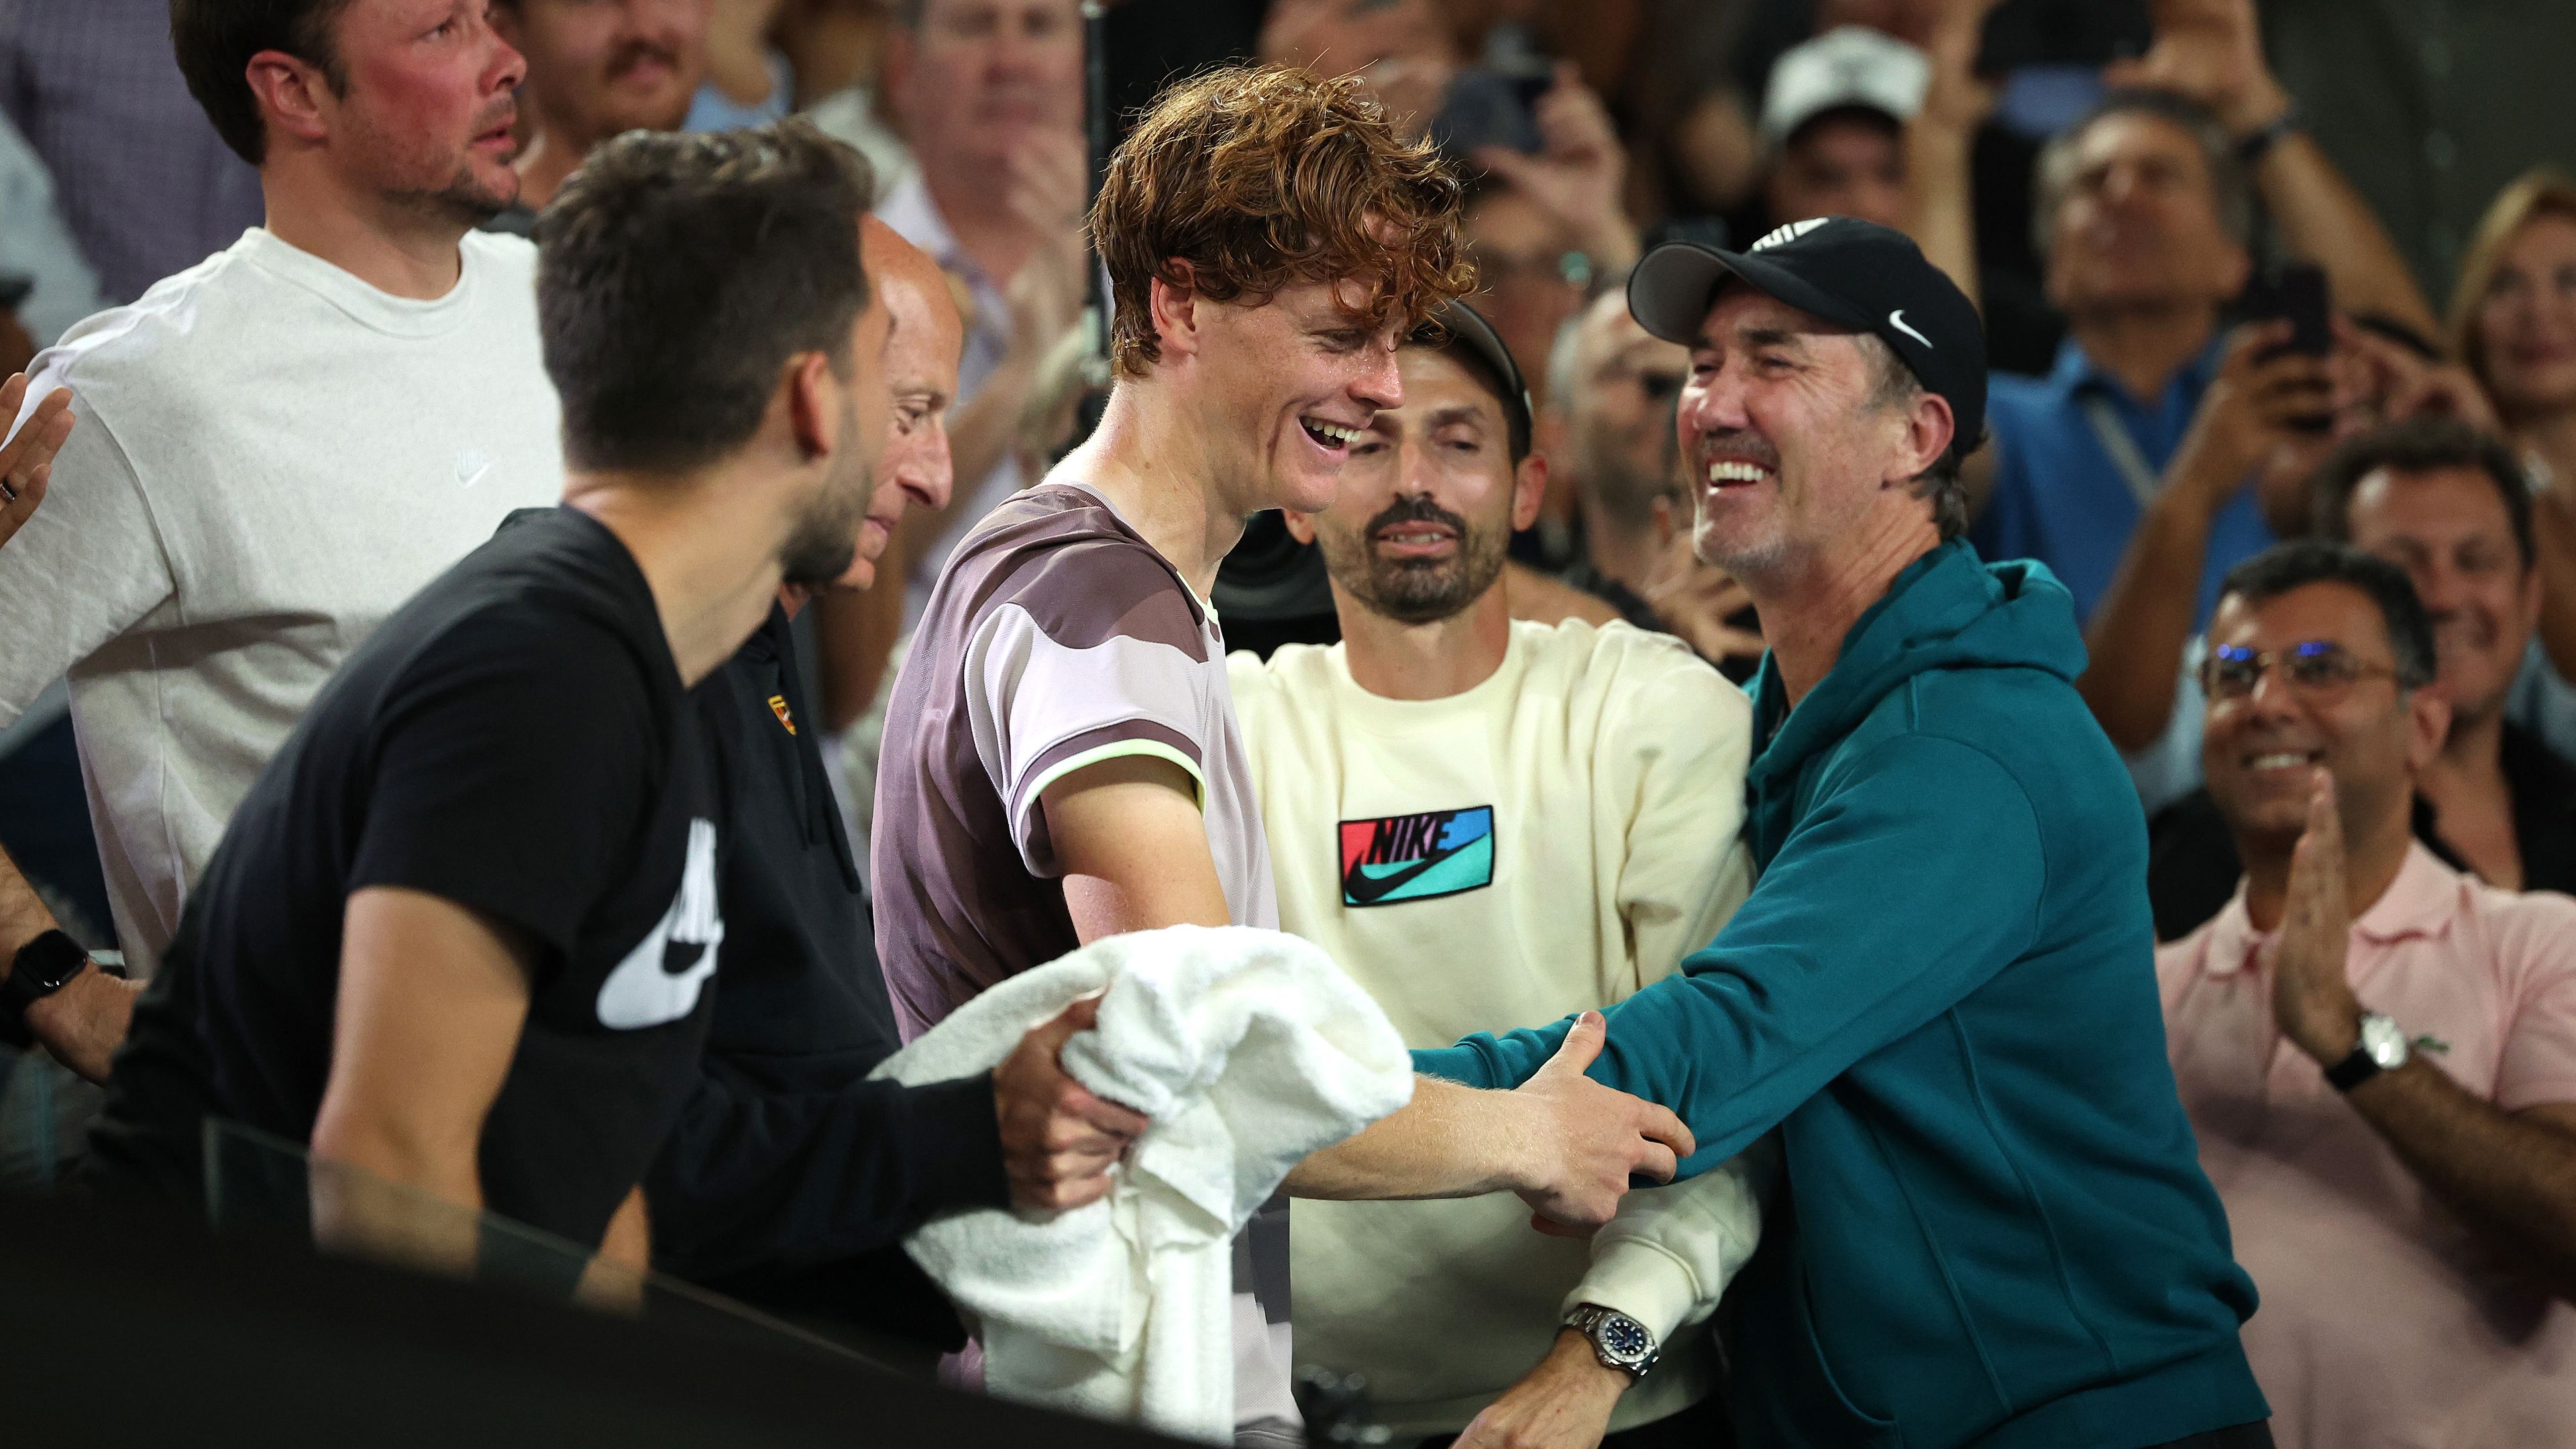 How 'football philosophy' helped guide Jannik Sinner to Australian Open triumph